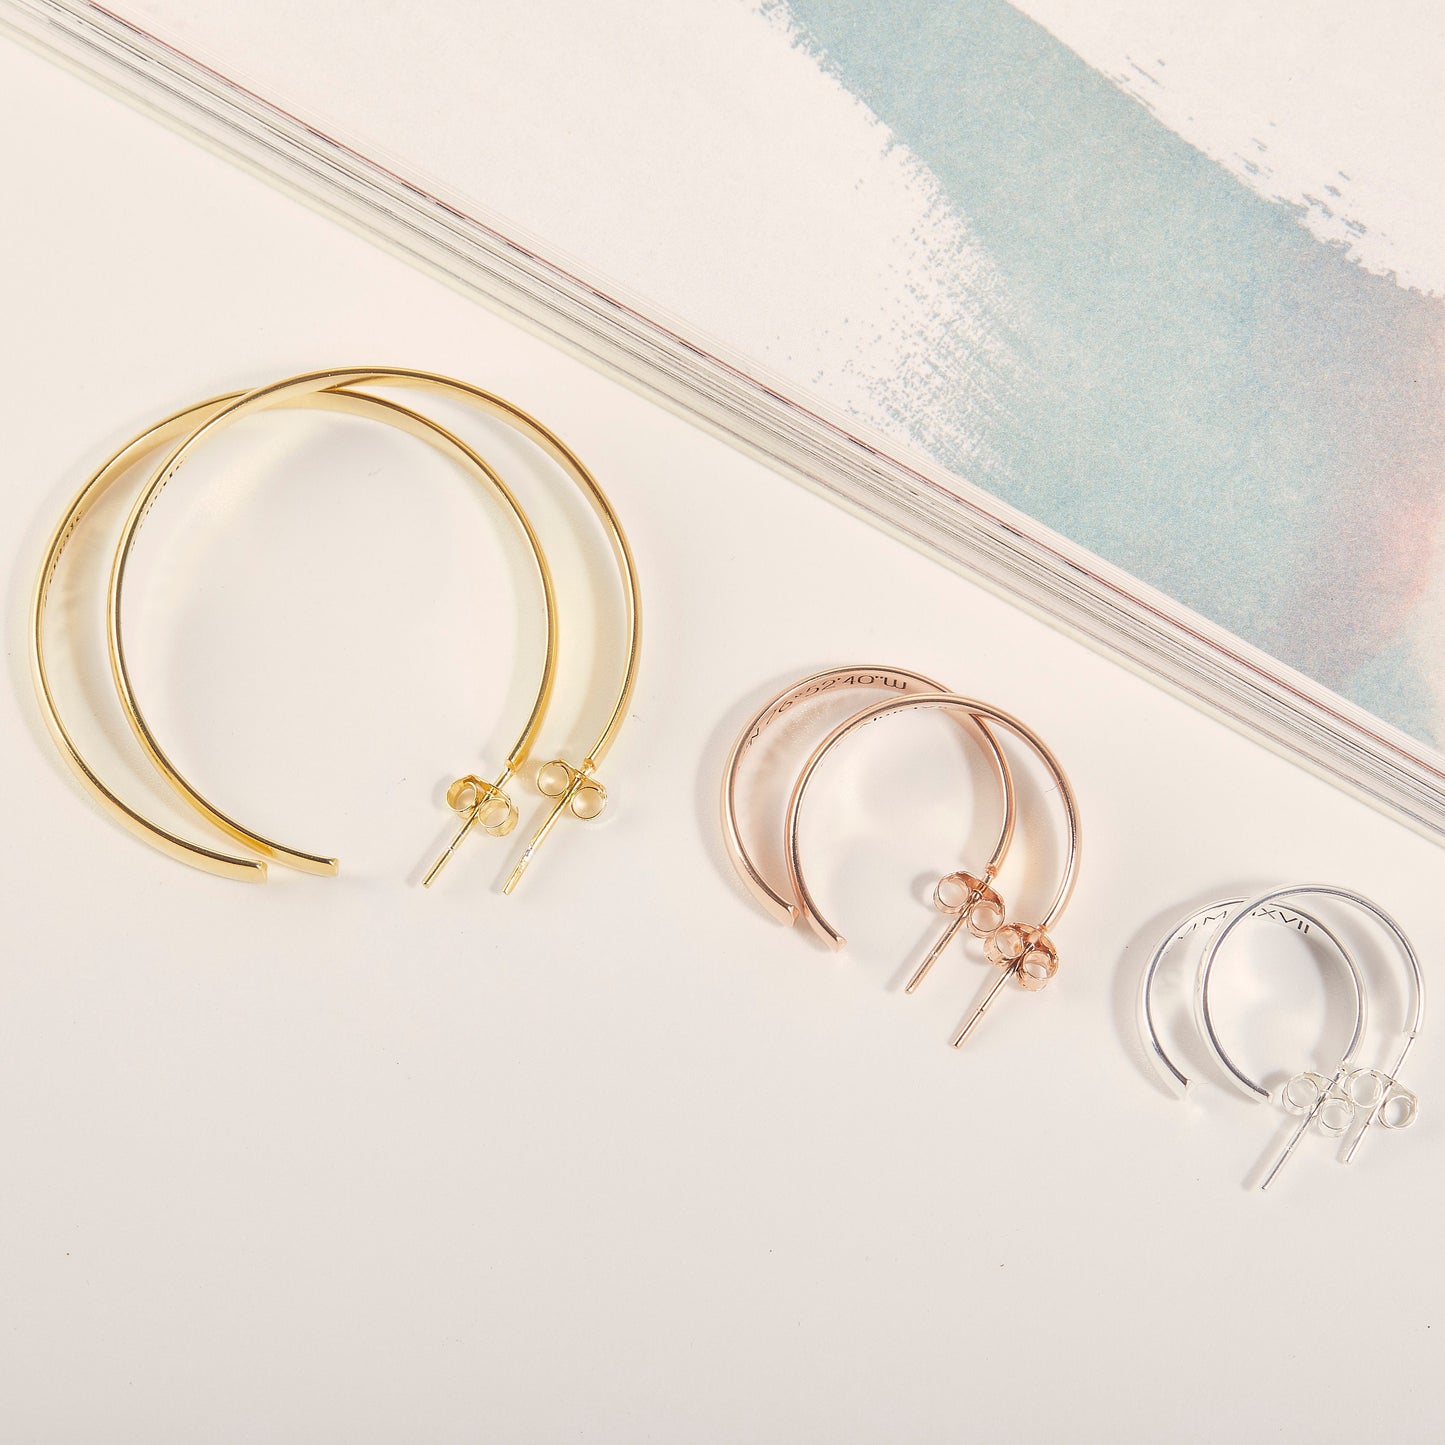 Personalized Hoop Earrings | Minimalist Gold Earrings | Large Statement Earrings | Bridal Earrings | Wedding Earrings | Bridesmaid Gifts